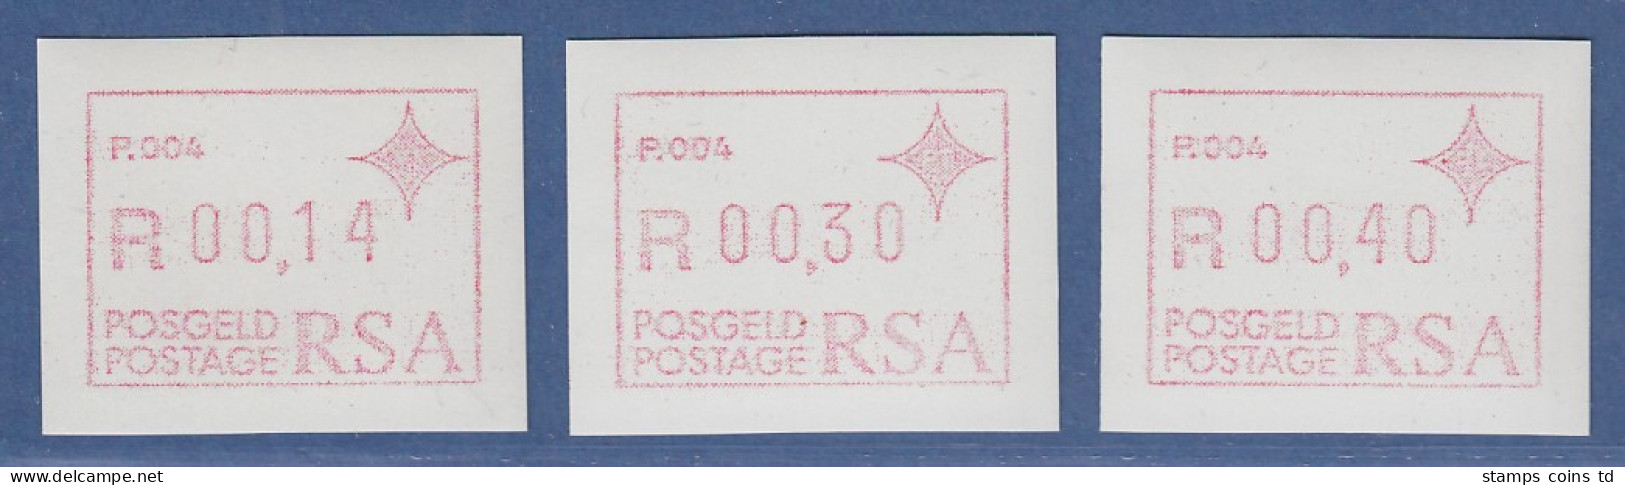 RSA Südafrika FRAMA-ATM  Aut.-Nr. P.004 Satz 14-30-40 ** (VS) - Frankeervignetten (Frama)